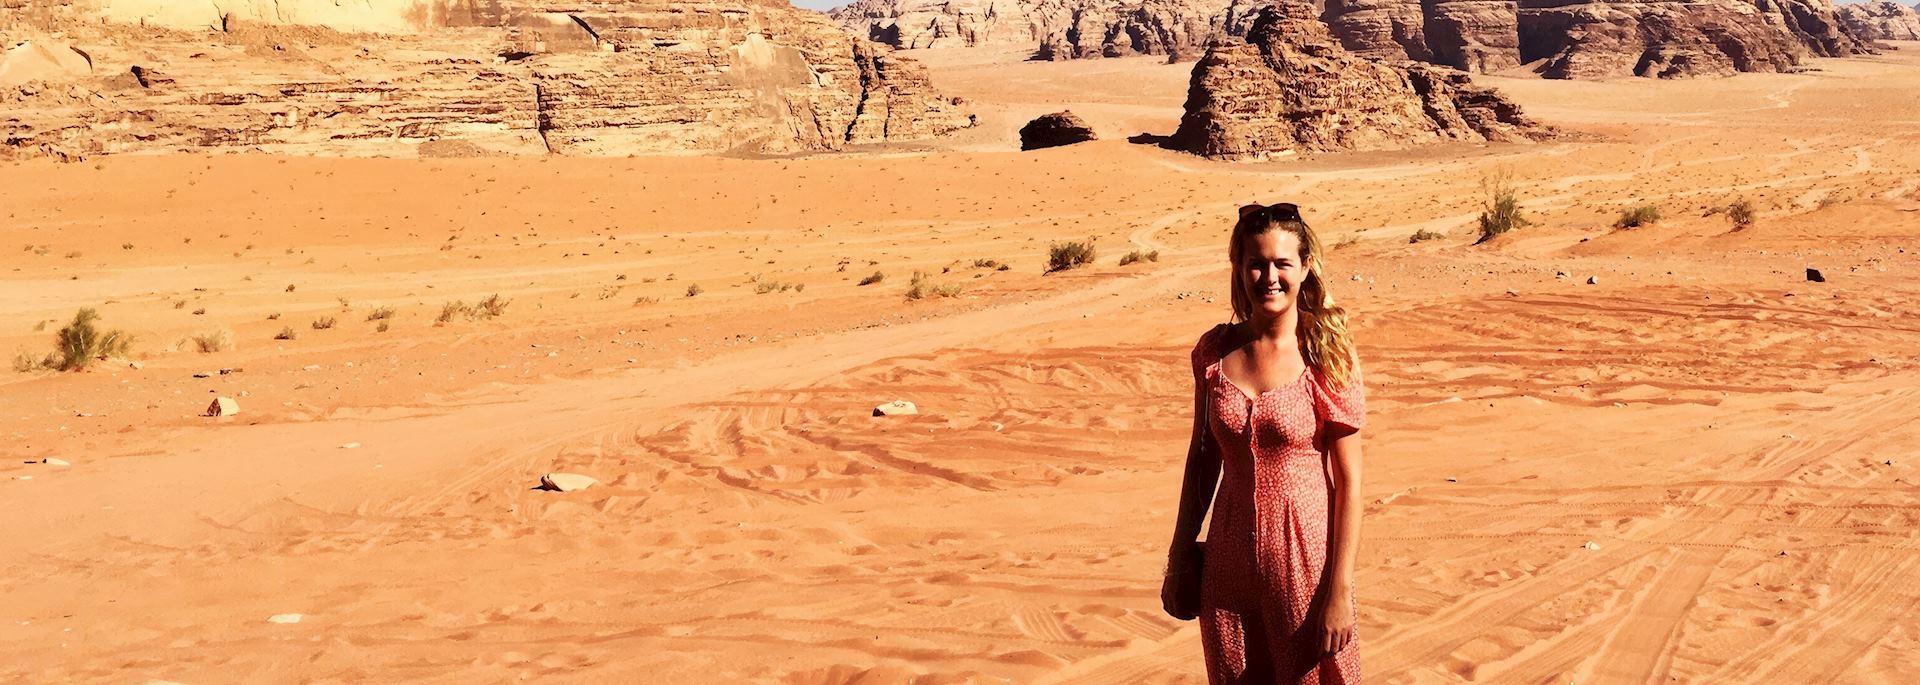 Sophie in Wadi Rum, Jordan